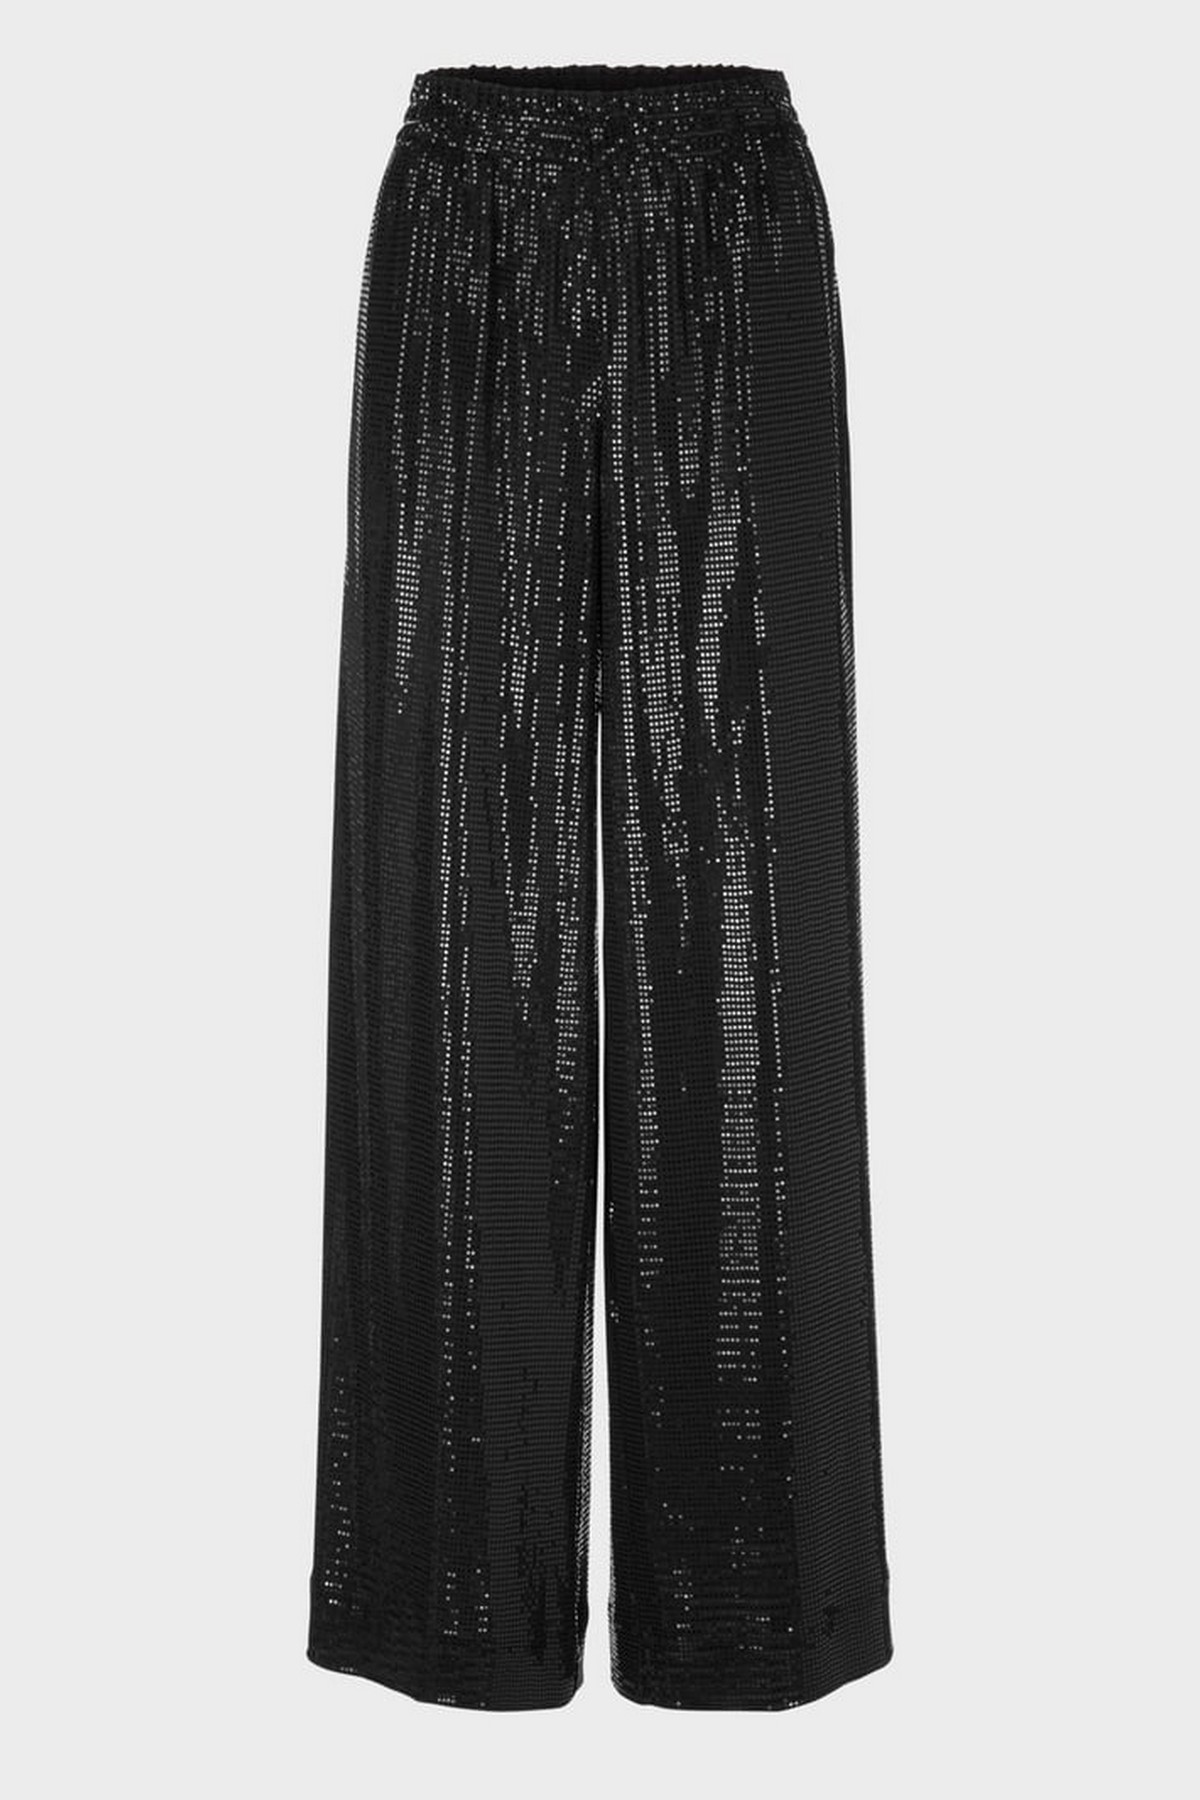 Broek wijd glinster in de kleur zwart van het merk Marc Cain Collections